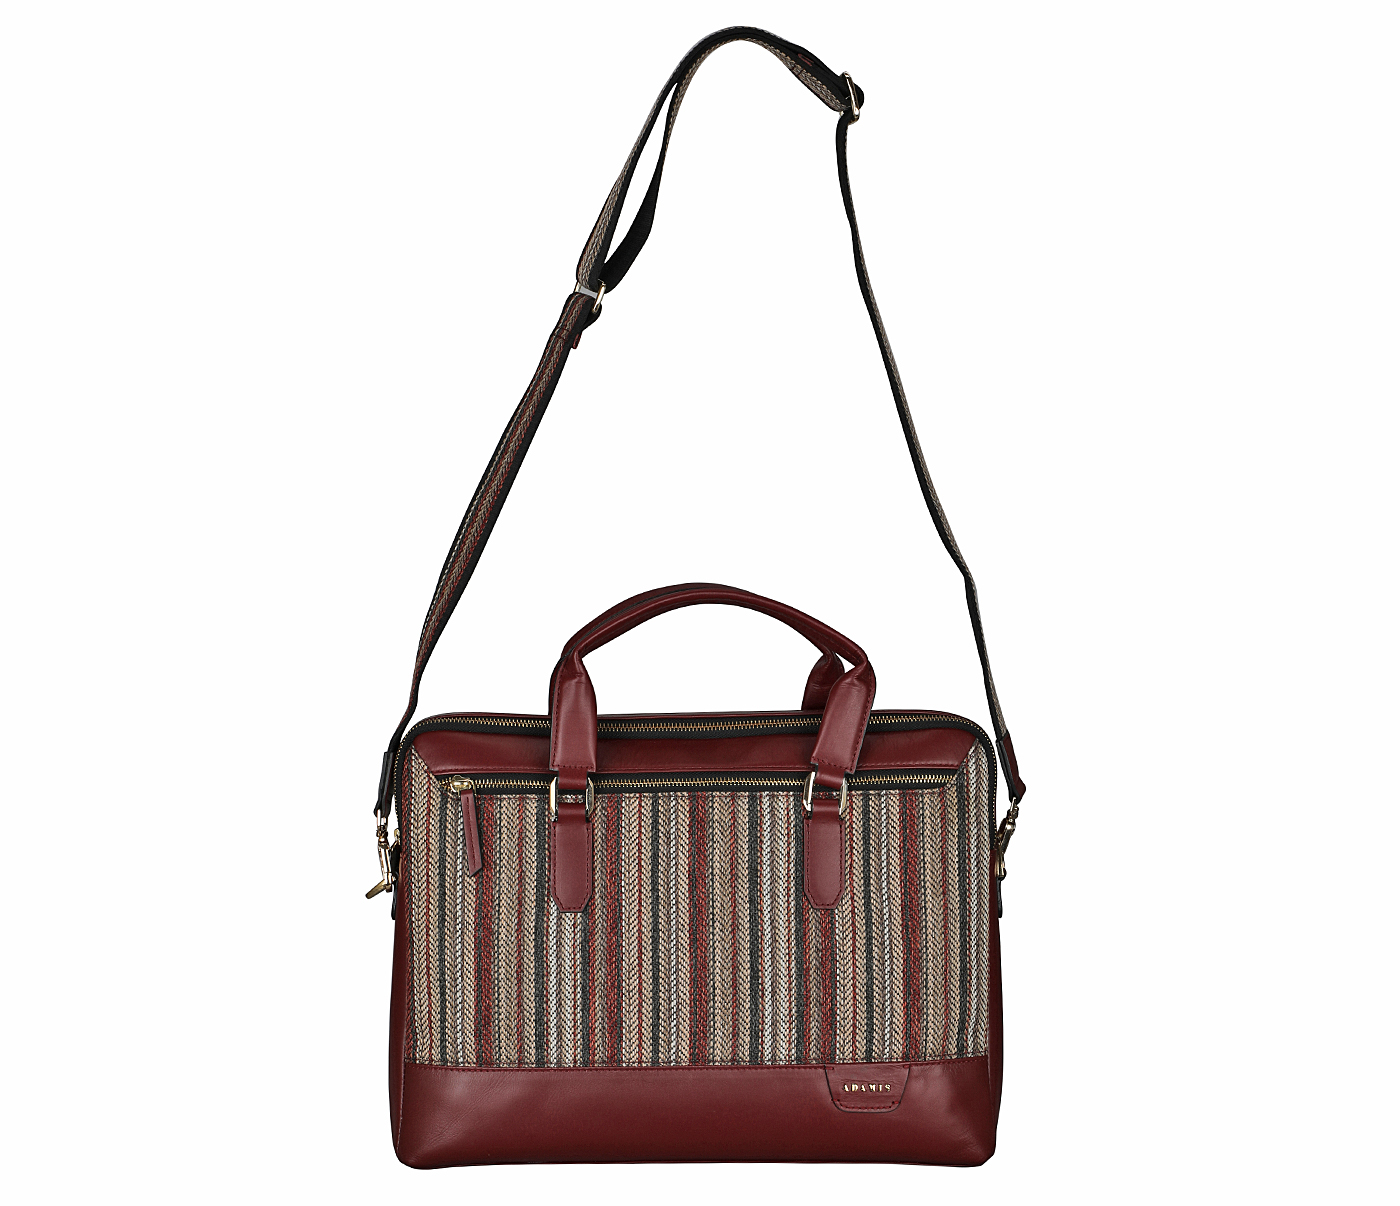 Portfolio / Laptop Bag-Alvaro-Laptop cum portfolio bag in Multi colored Stripes print fabric with Genuine Leather combination - Wine